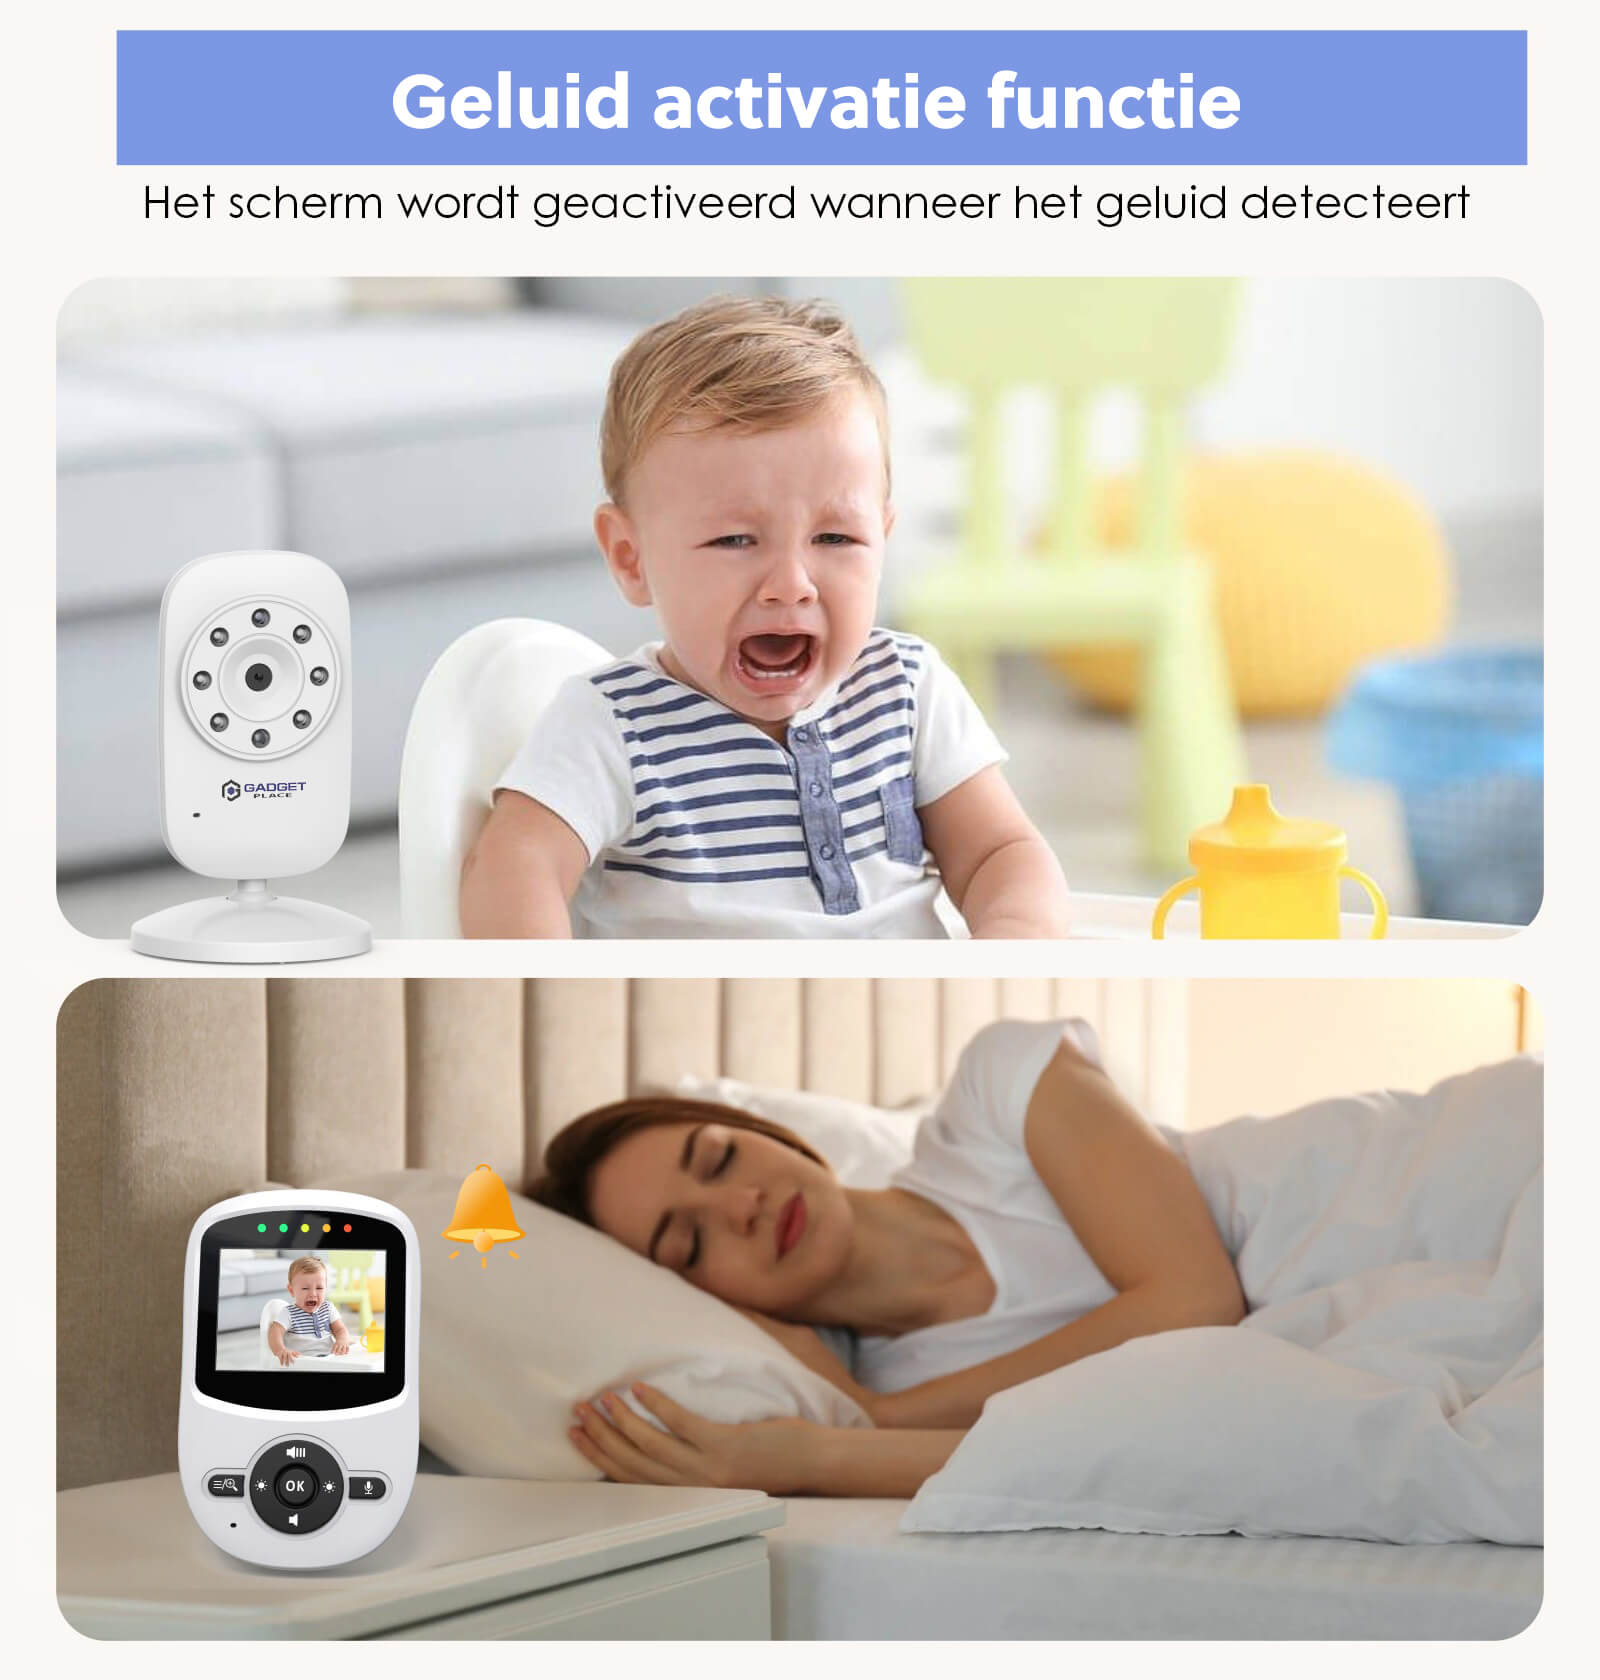 Babyfoon met Camera: 300M Bereik, Video & Audio, Zonder WiFi - De Gatgetwinkel